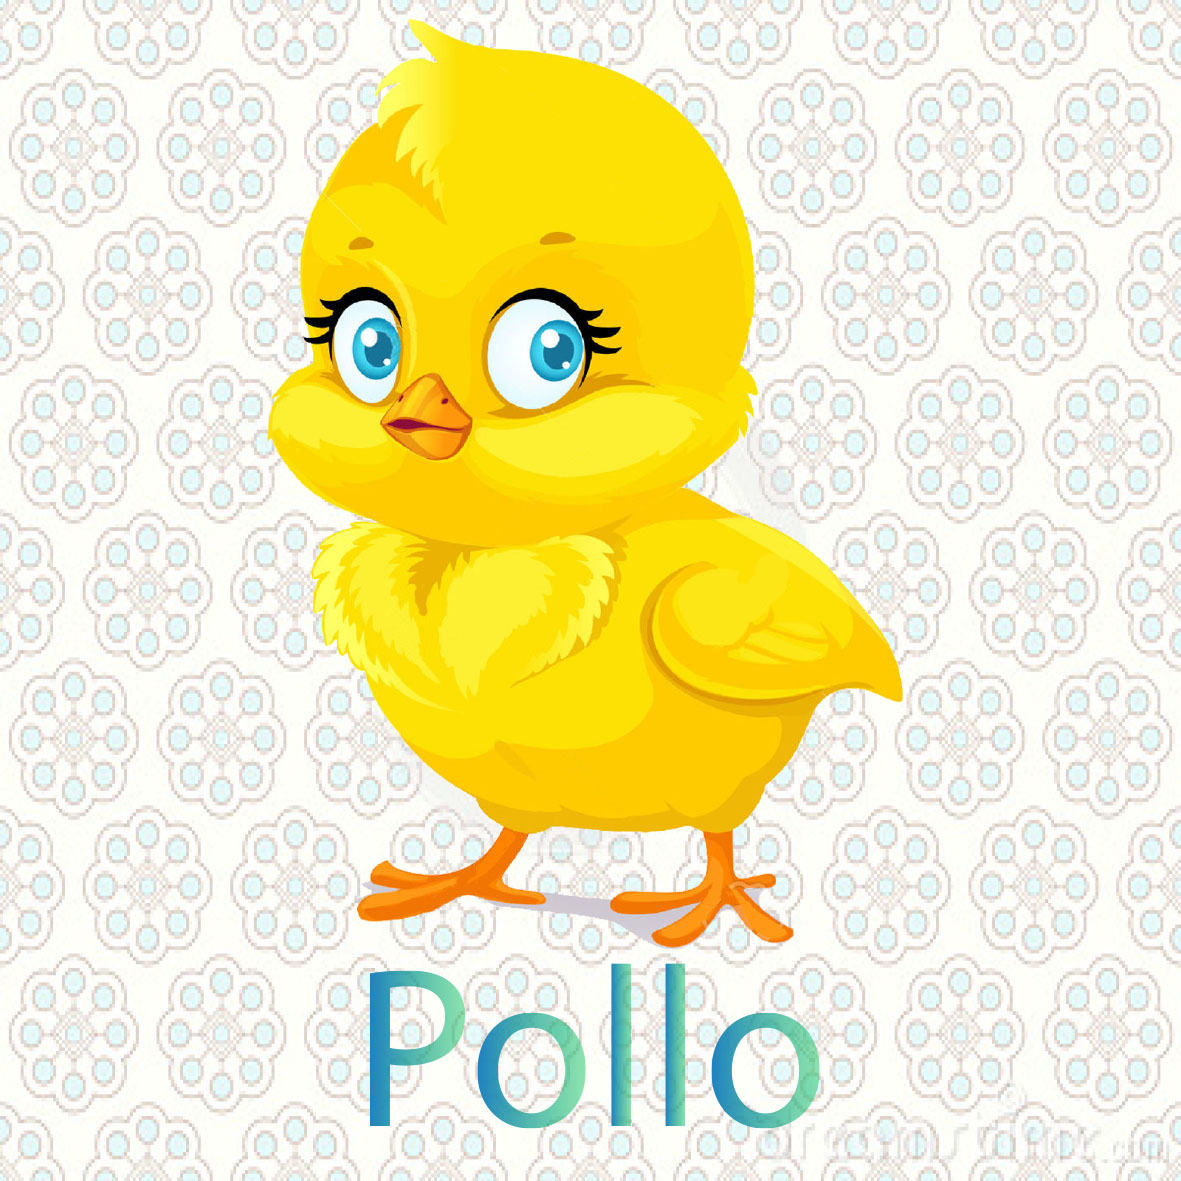  imagen de un pollo ,  tiene dos patas un pico y dos alas son aves de color amarillo comen gusanos o maiz y viven en las granjas  